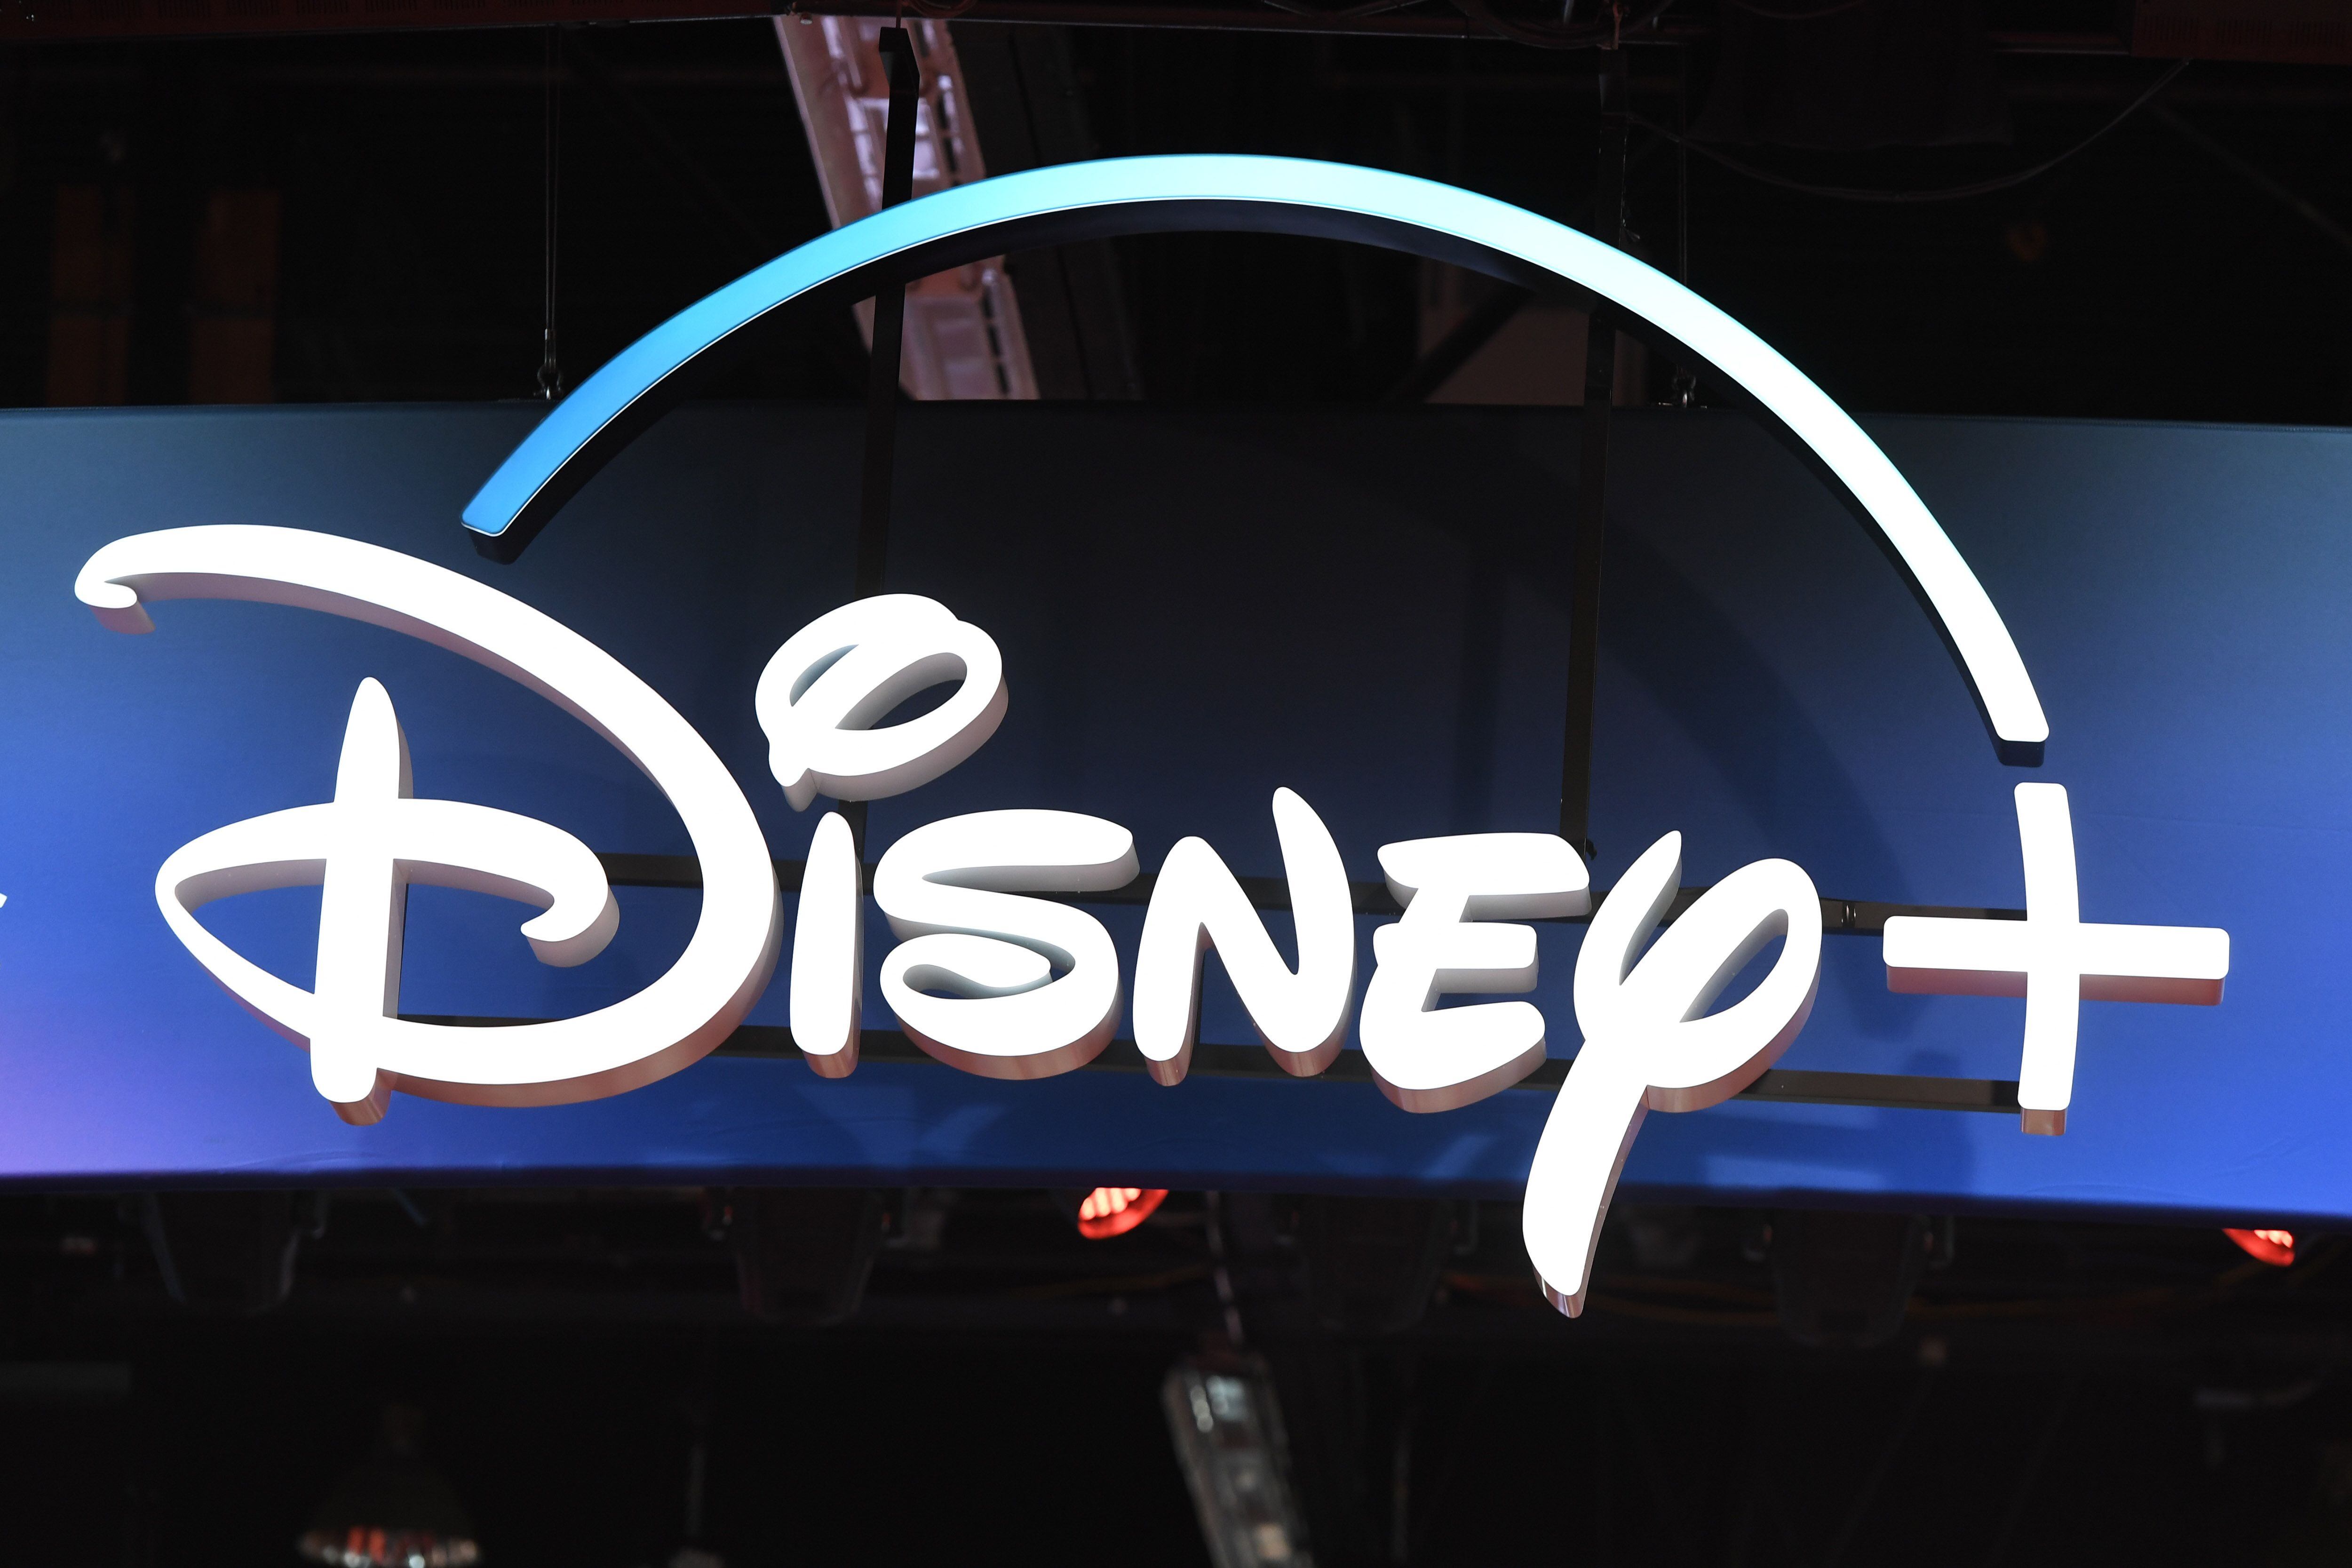 Disney Plus contará con nuevos planes de suscripción: estándar, estándar con anuncios y premium. Pronto llegarán nuevos detalles de sus precios y propuestas(Photo by Robyn Beck / AFP)